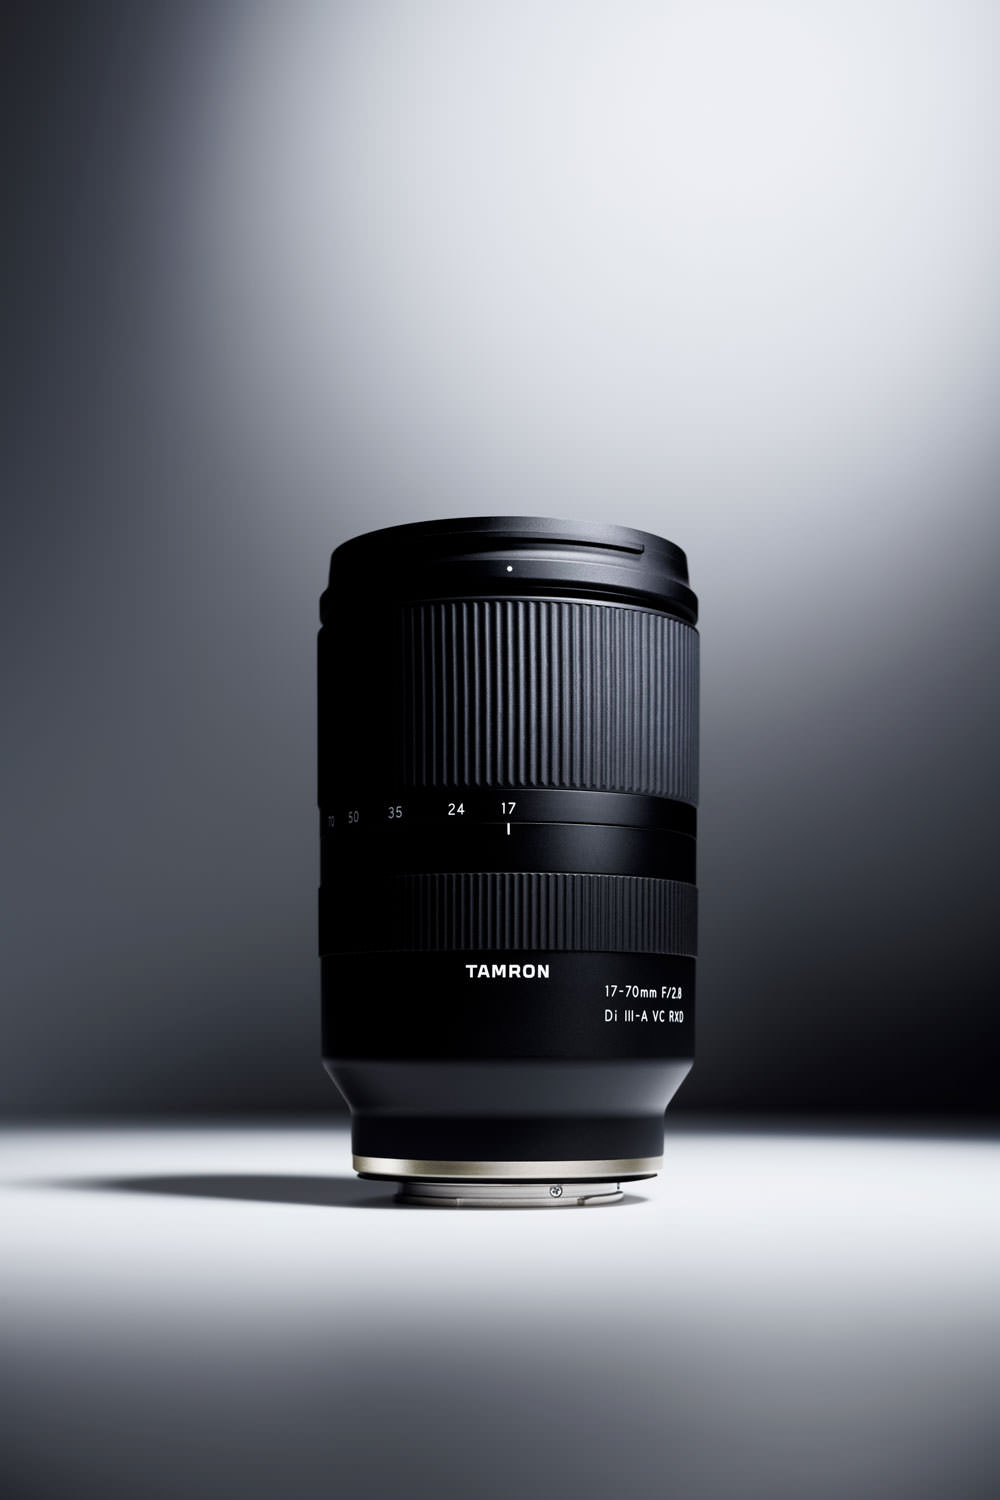 Tamron 17-70mm f/2.8 Di III-A VC RX D APS-C zoom lens for Sony E-mount -  Photo Rumors